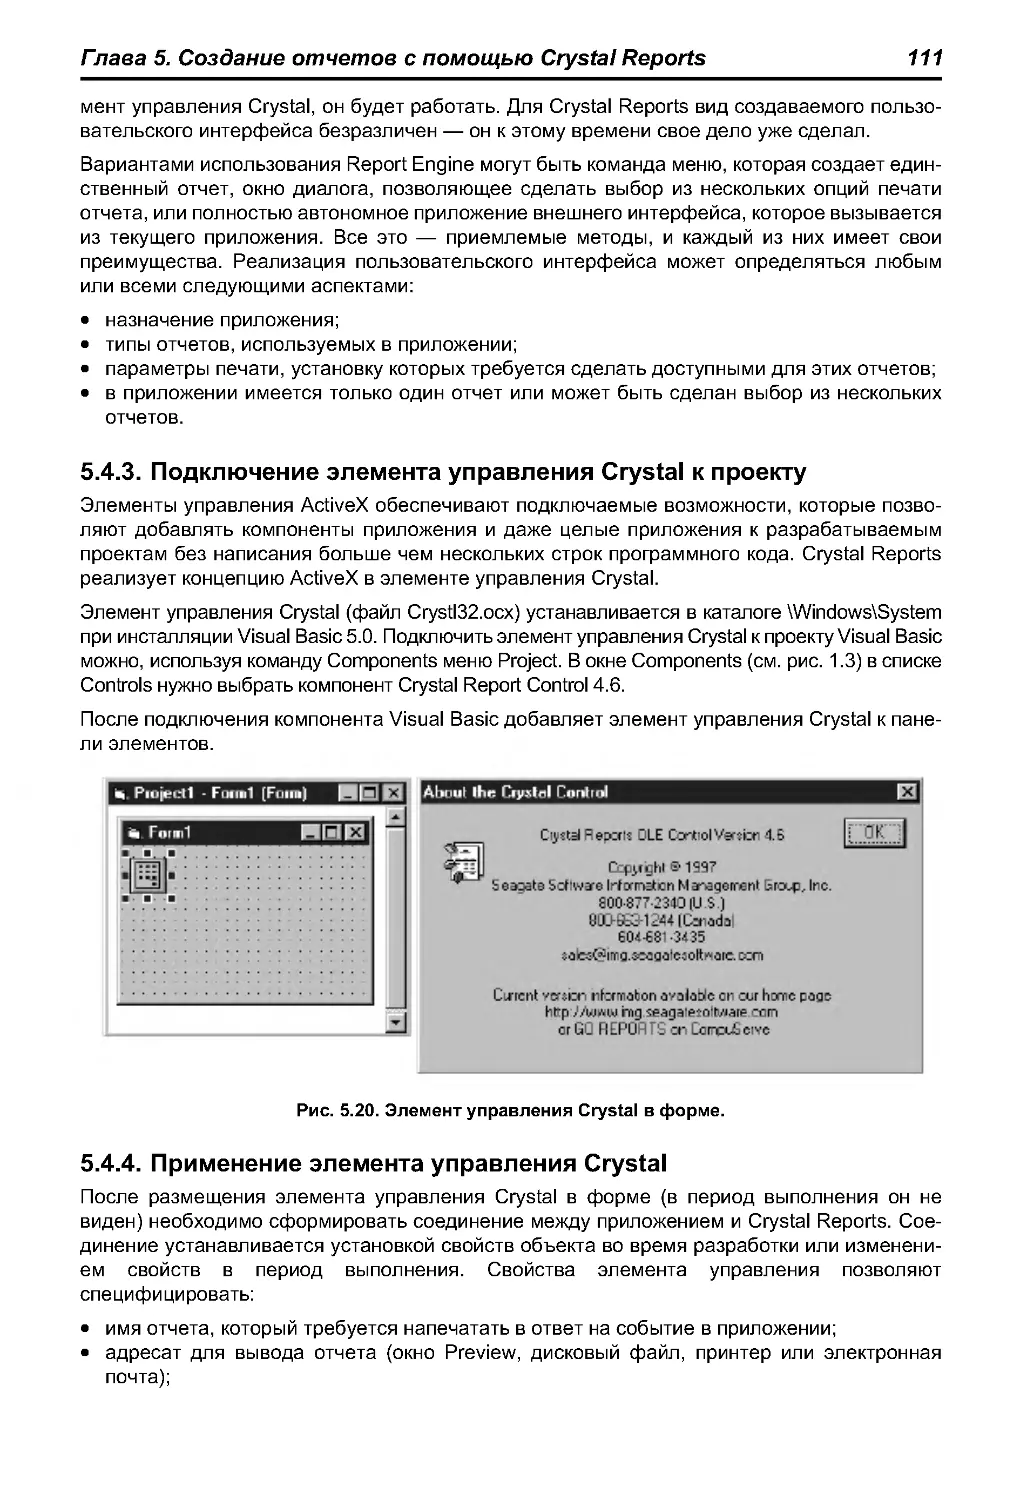 5.4.3. Подключение элемента управления Crystal к проекту
5.4.4. Применение элемента управления Crystal